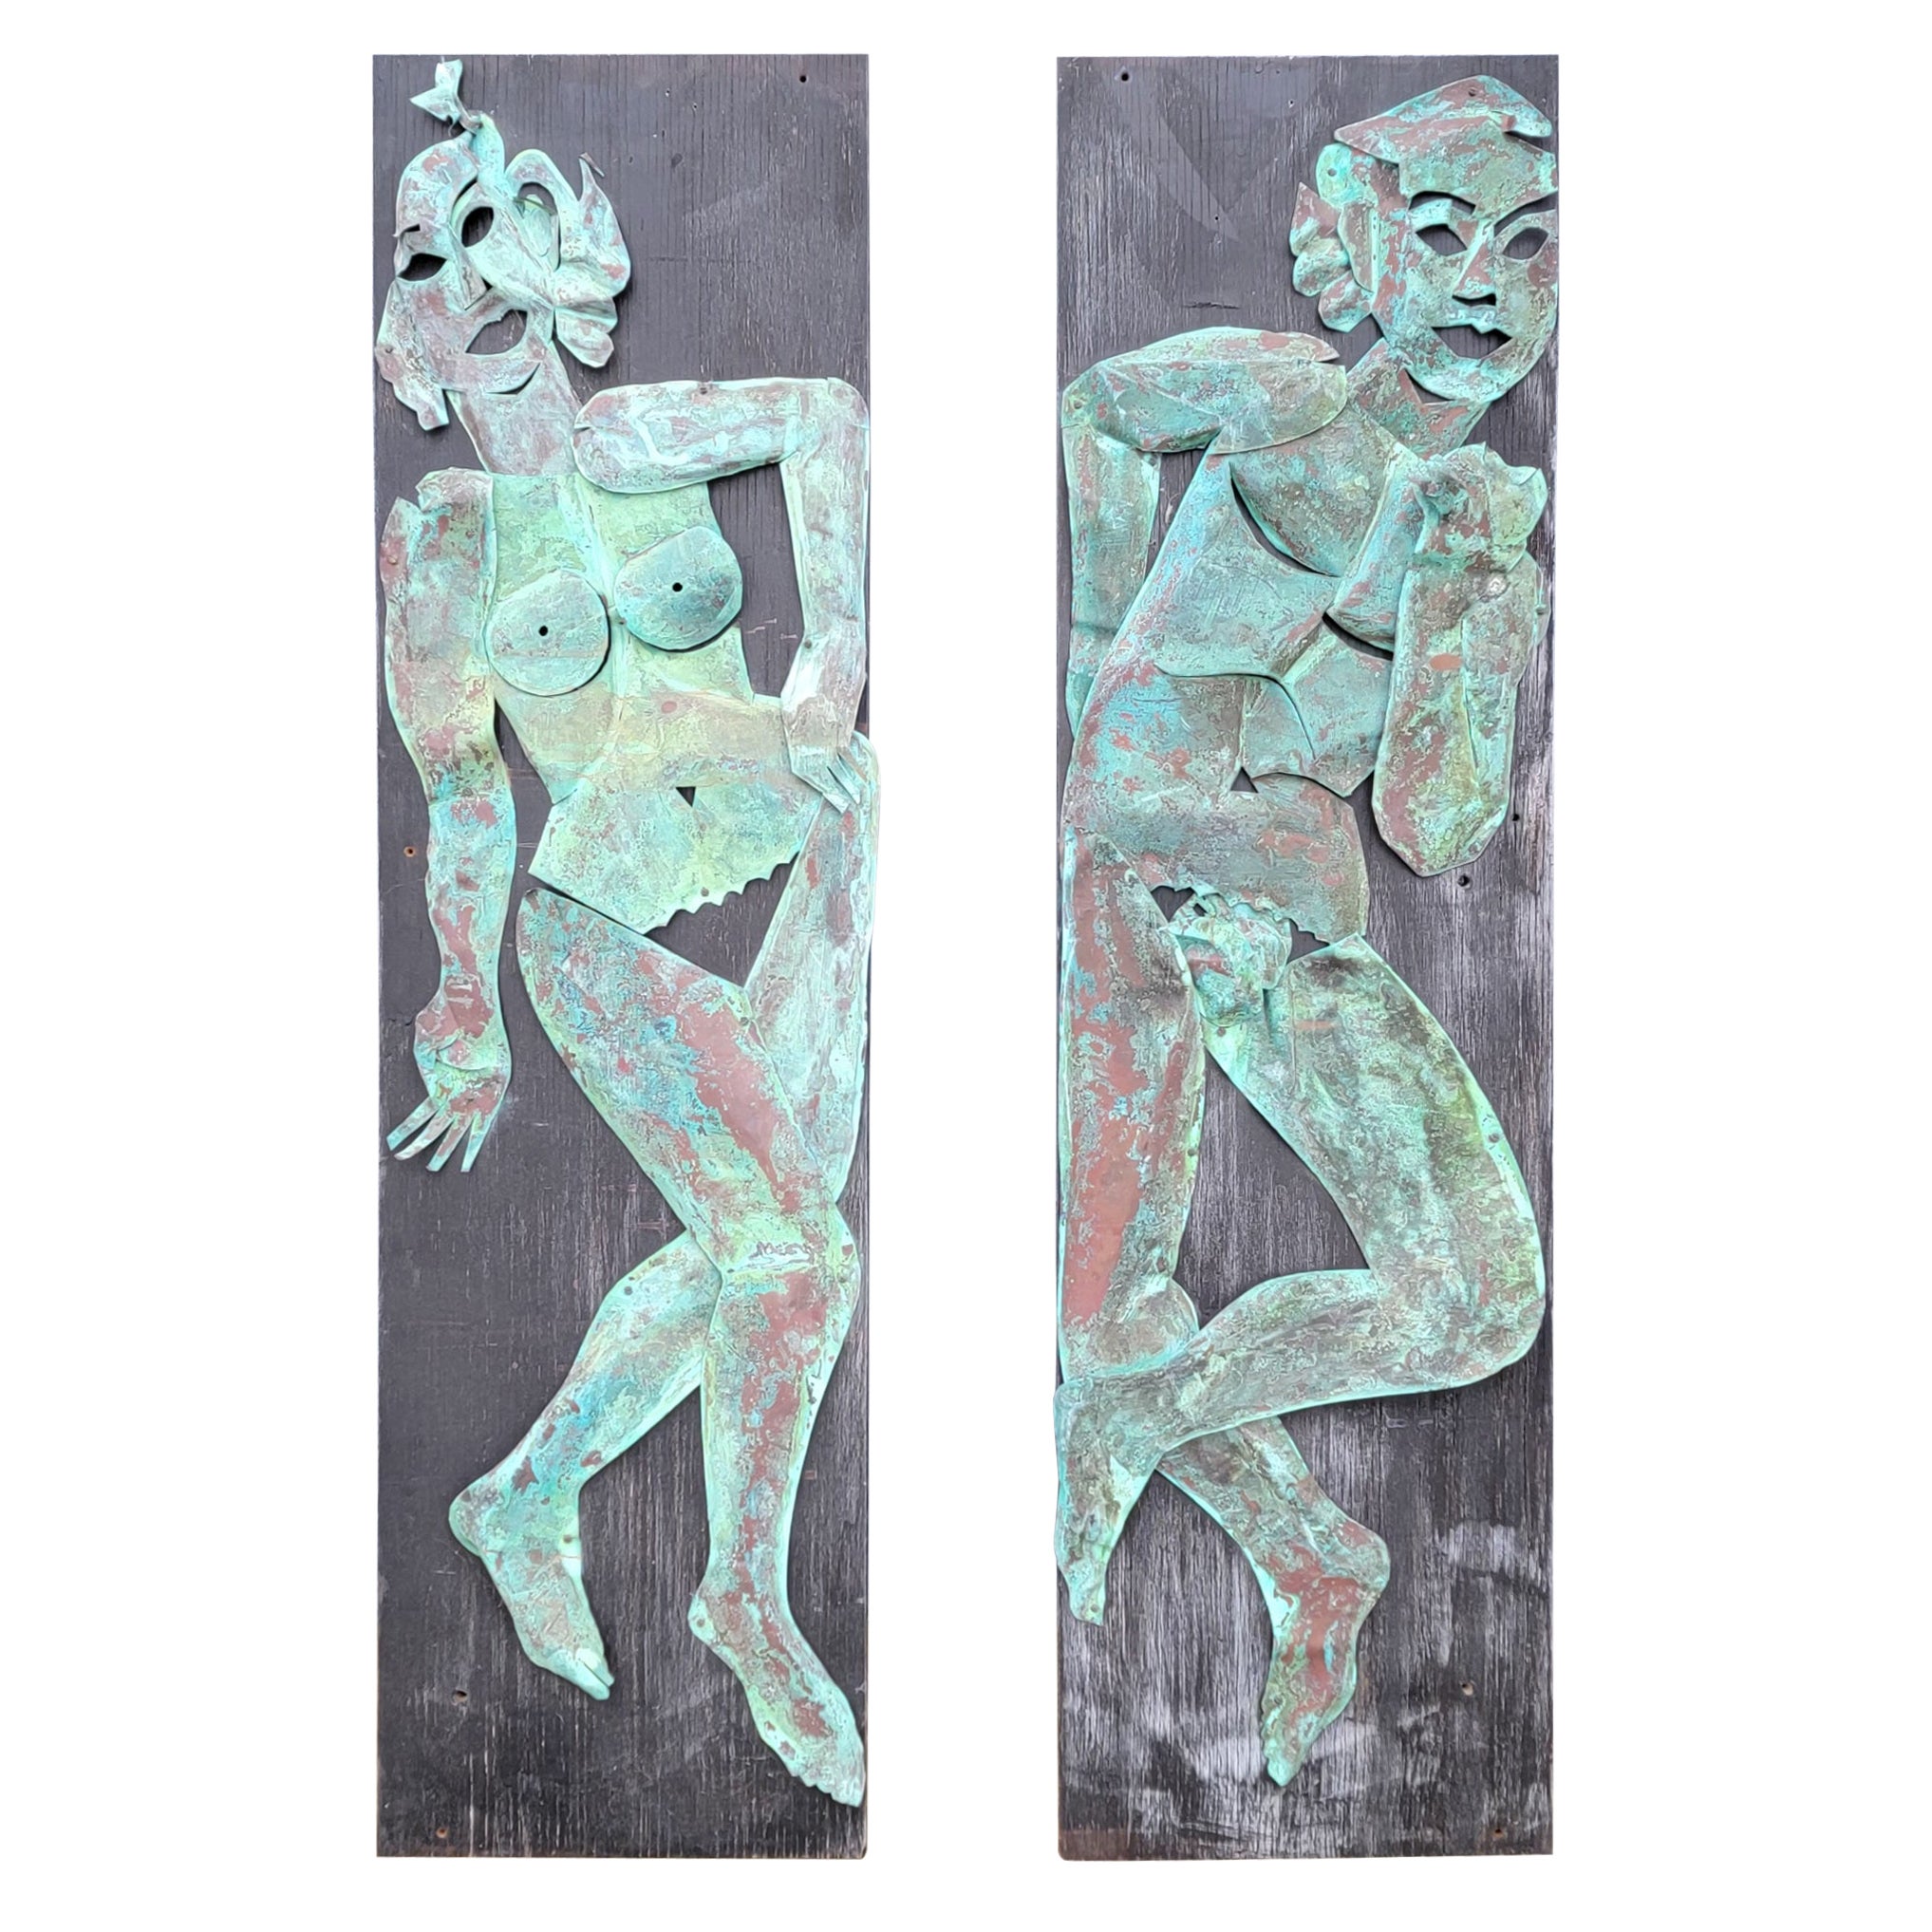 Kupfer-Wandskulptur Akt-Figuren männlich und weiblich